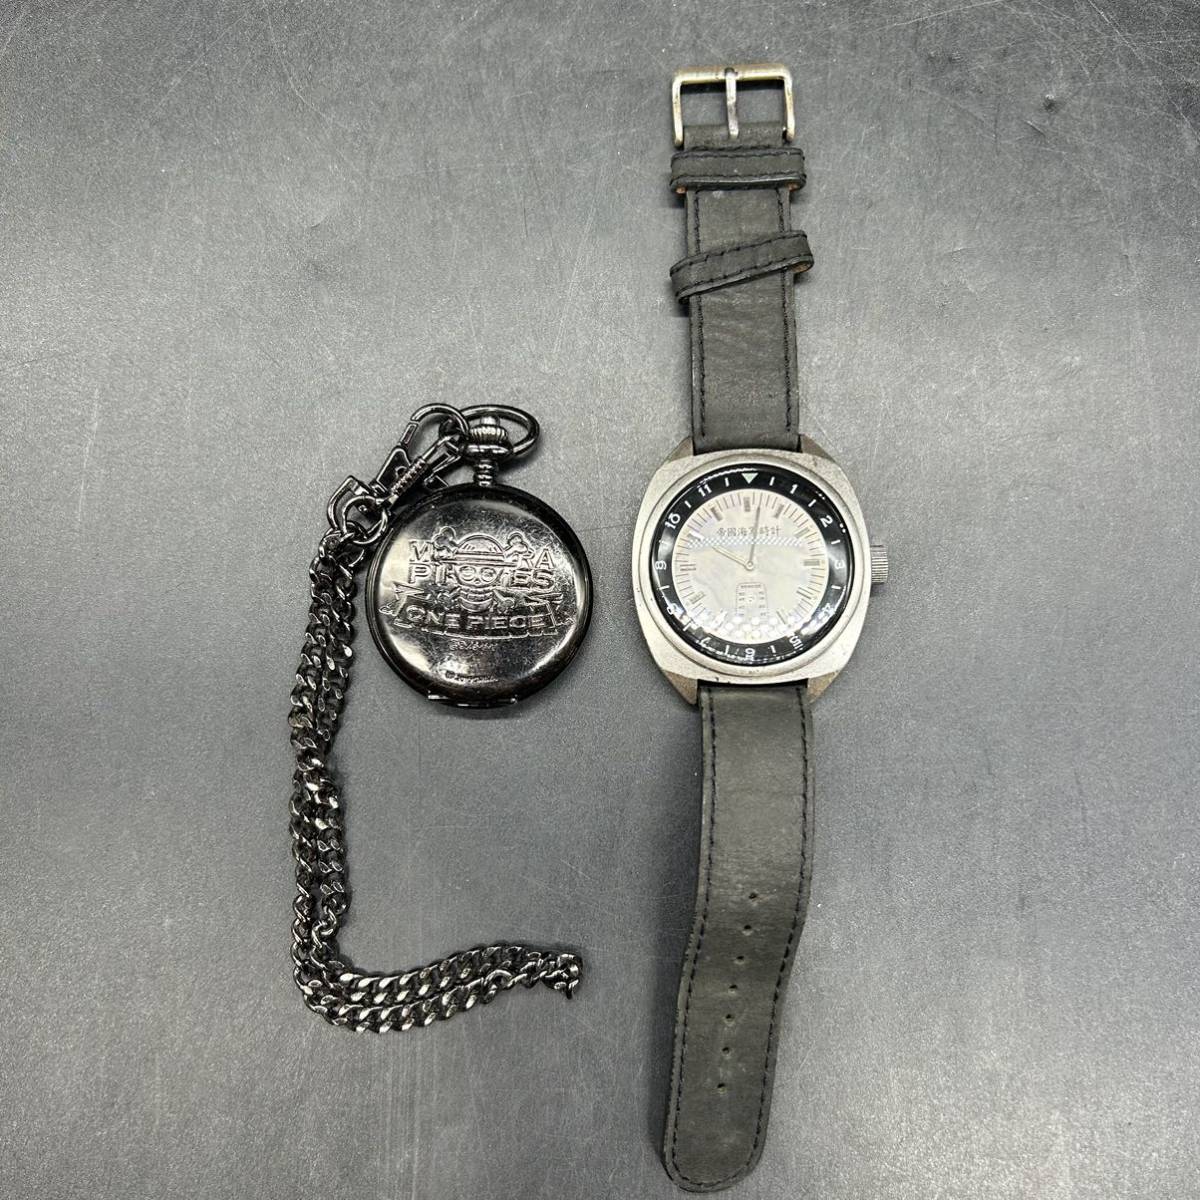 帝国海軍時計 1930 腕時計 メンズ腕時計 one piece 懐中時計 2個セツト